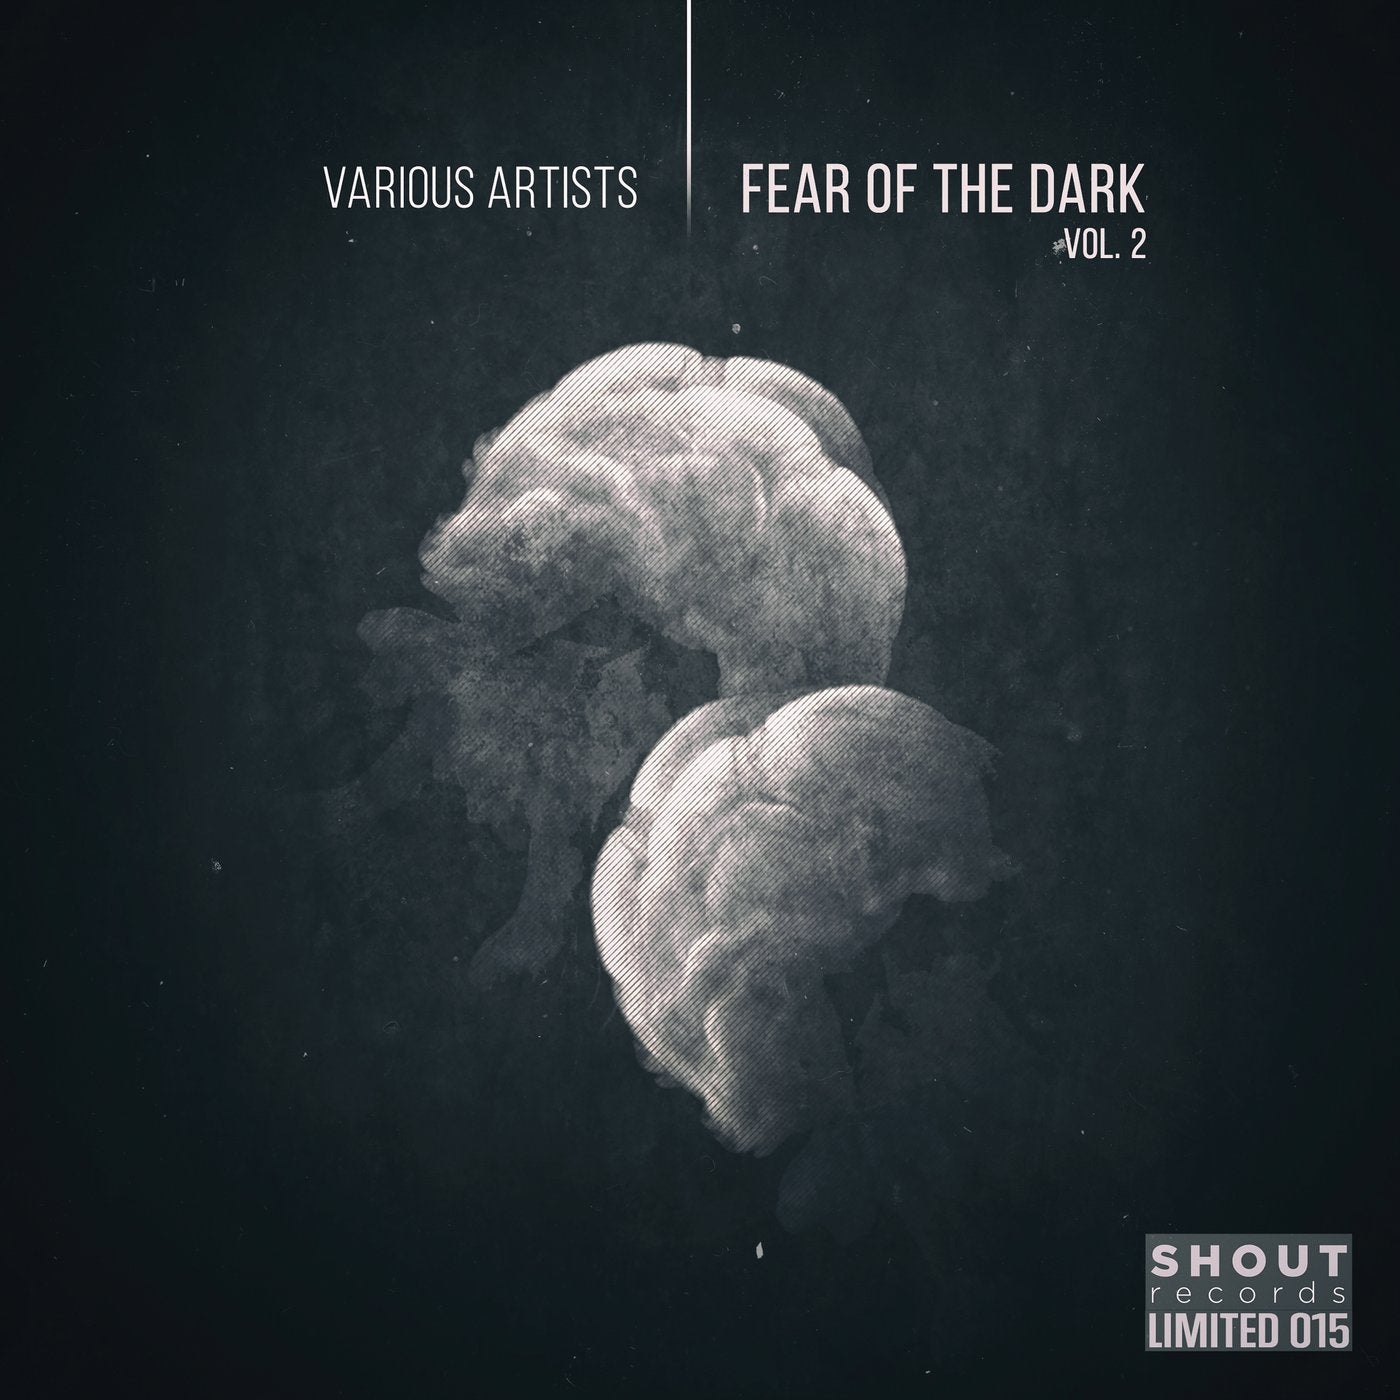 Fear of the Dark, Vol. 2